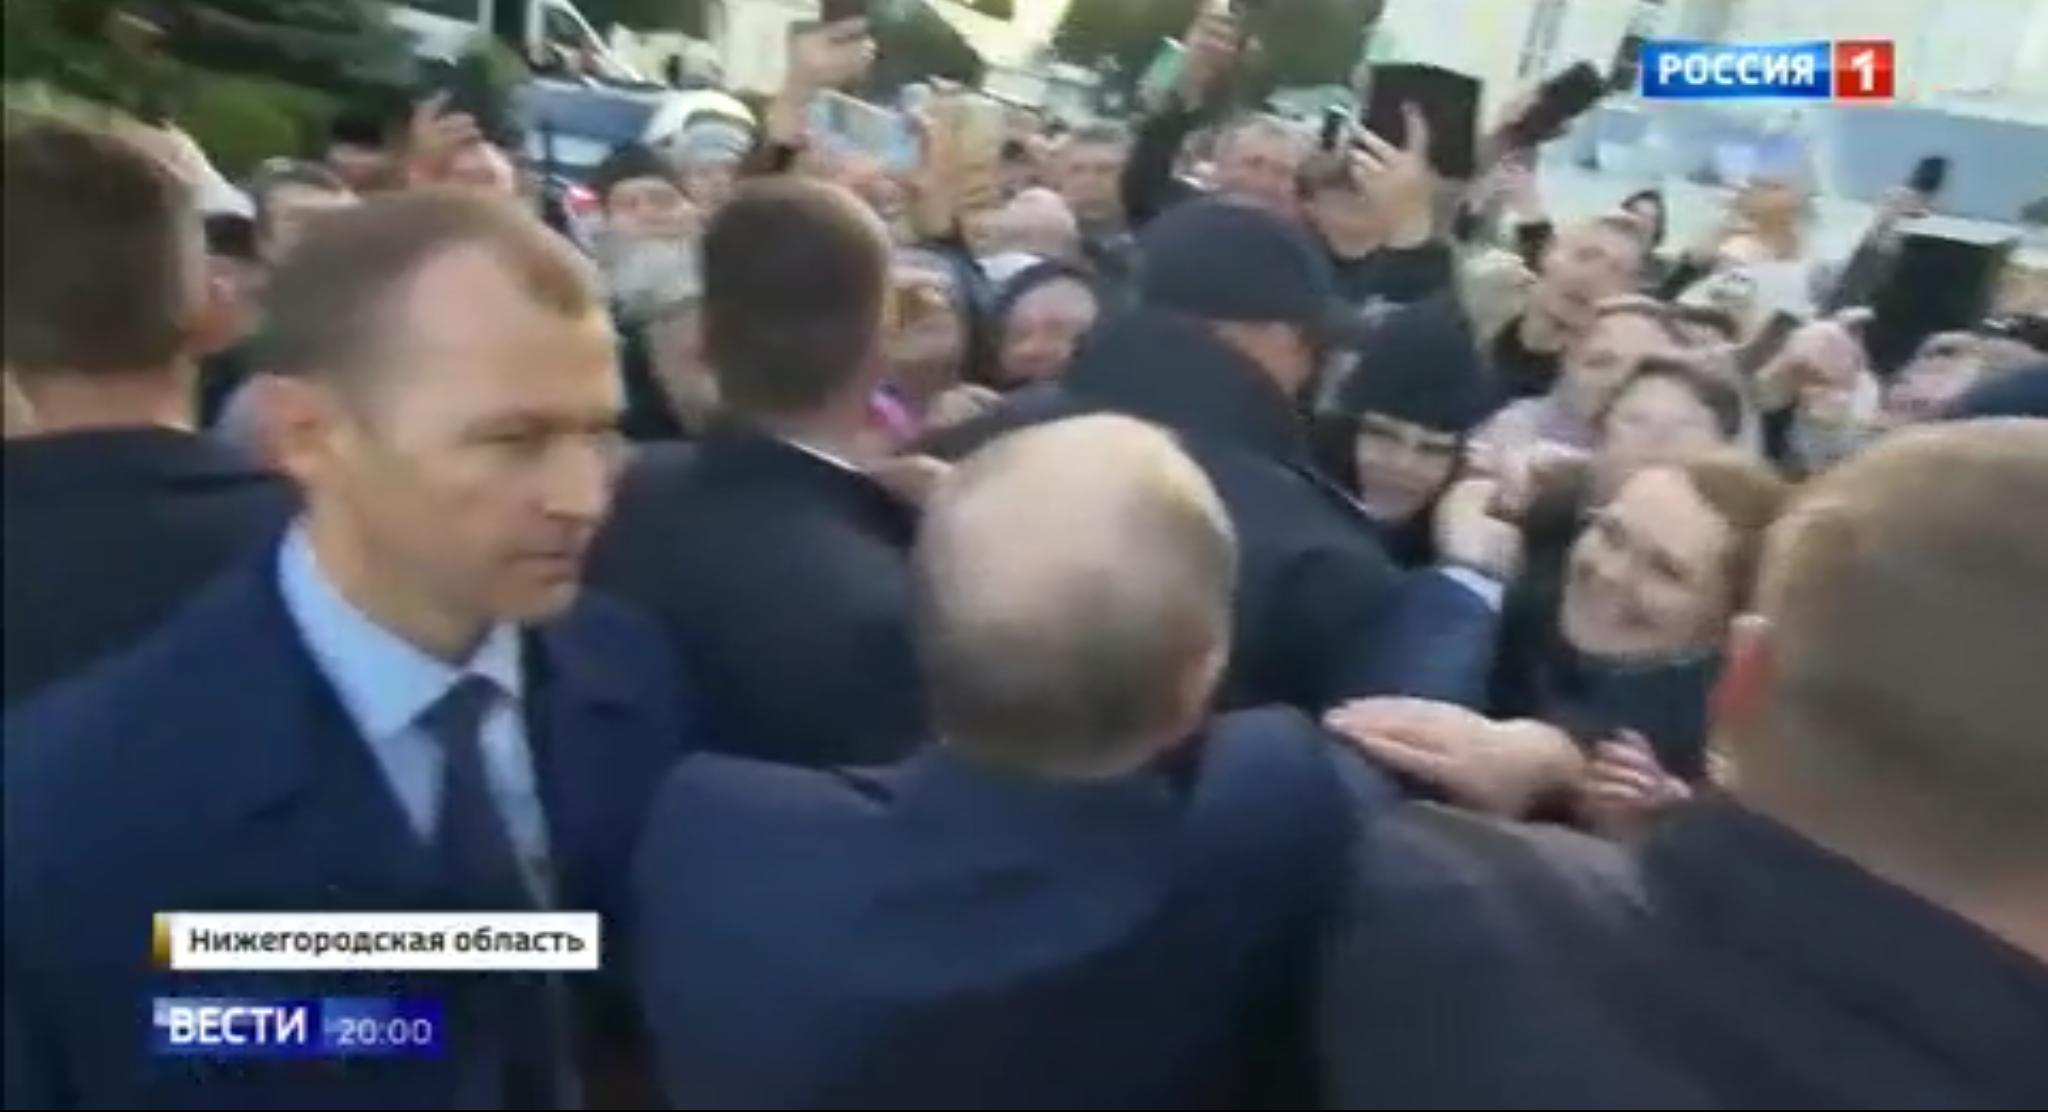 Putin wita się z ludxmi odgrodzony od nich dwoma rzędami ochroniarzy